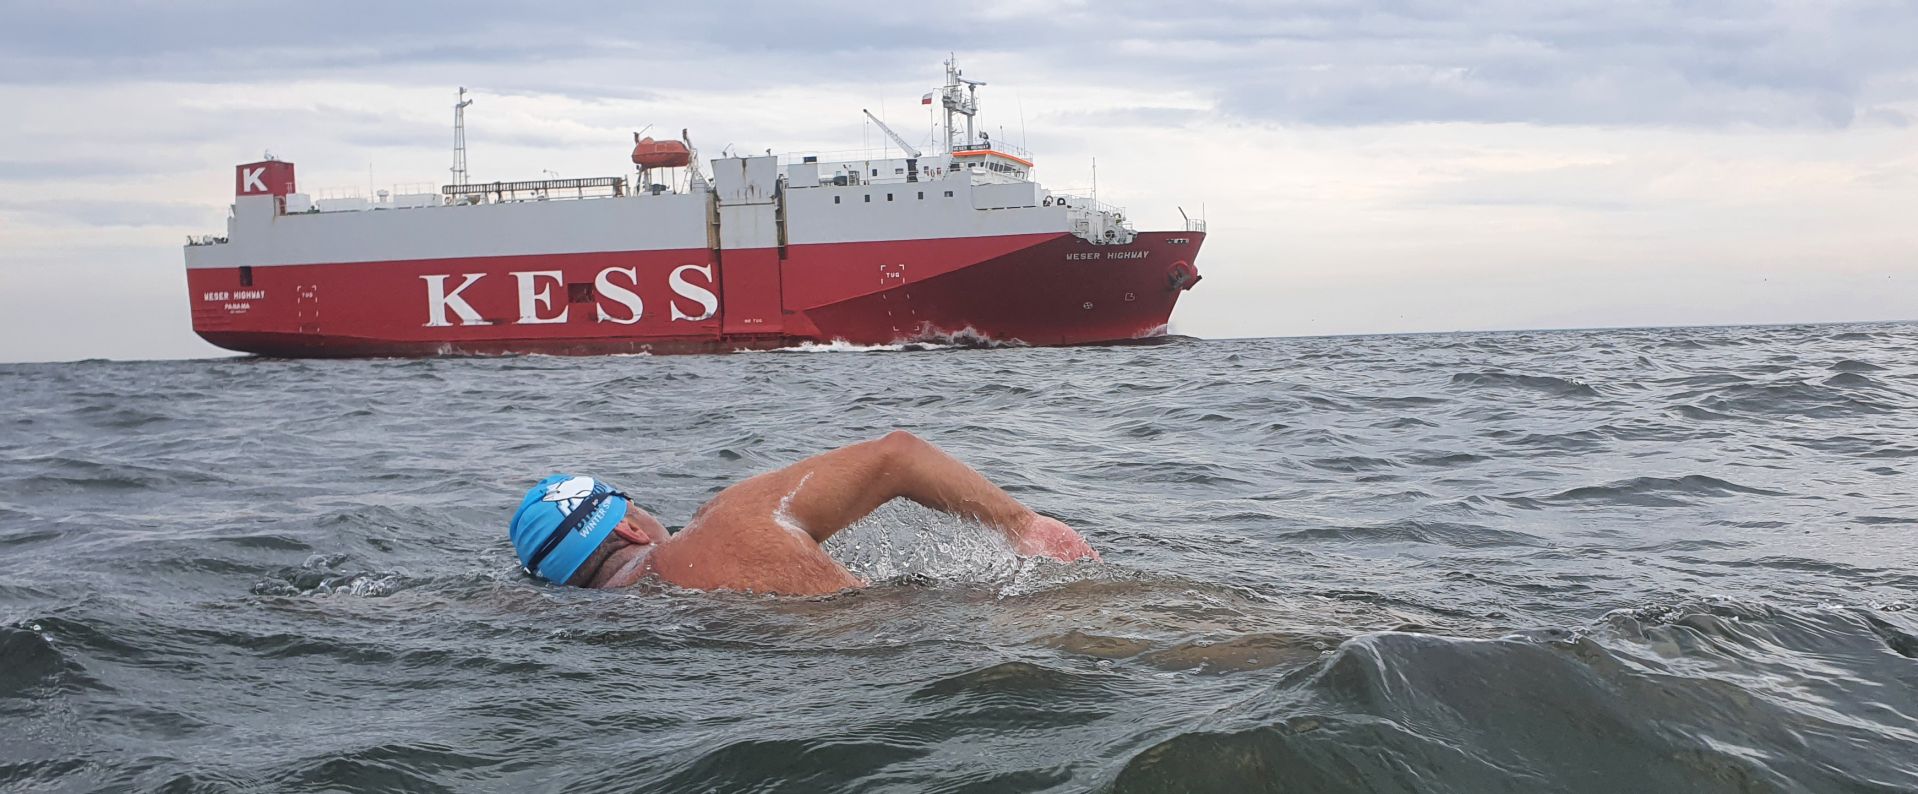 Piotr Biankowski podczas próby przepłynięcia Kanału La Manche 